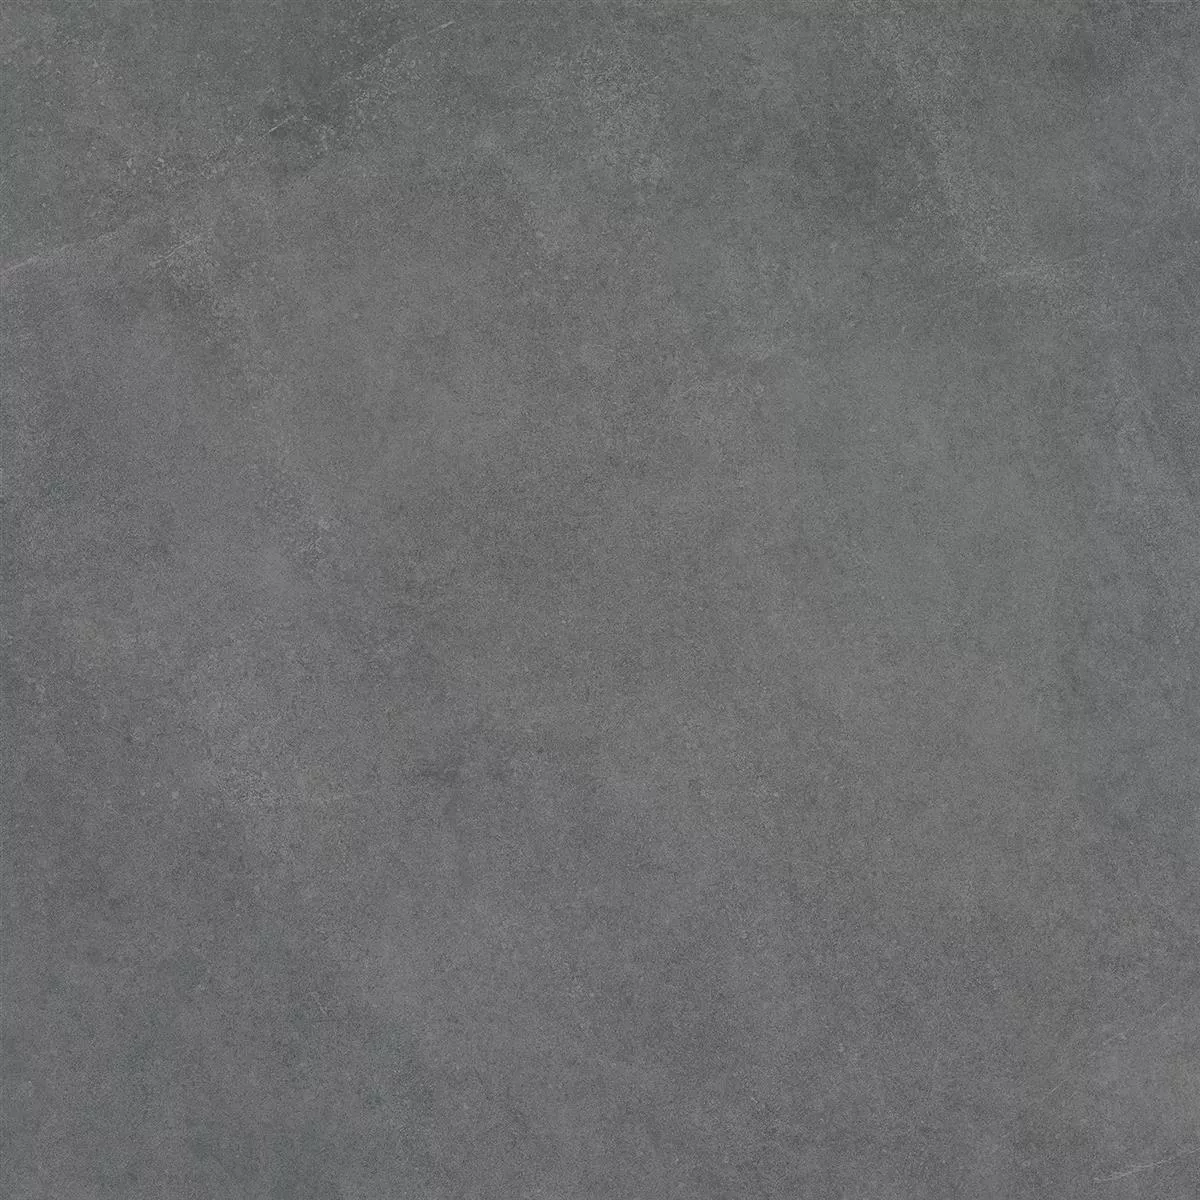 Πλάκες Εράντας Εμφάνιση Tσιμέντου Newland Ανθρακίτης 60x60x3cm